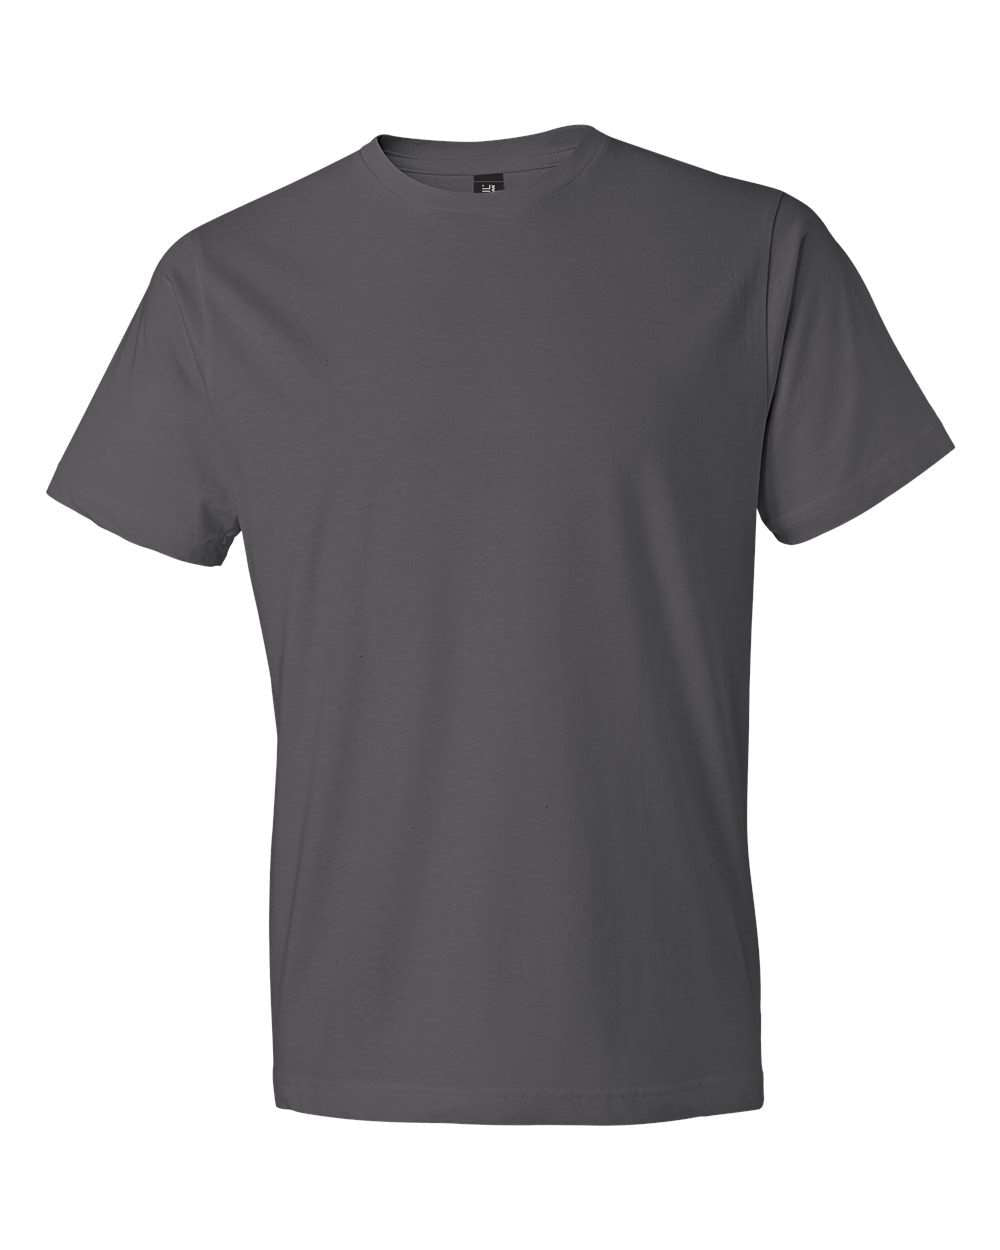 Gildan - Softstyle® Lightweight T-Shirt - 980- XS-3XL